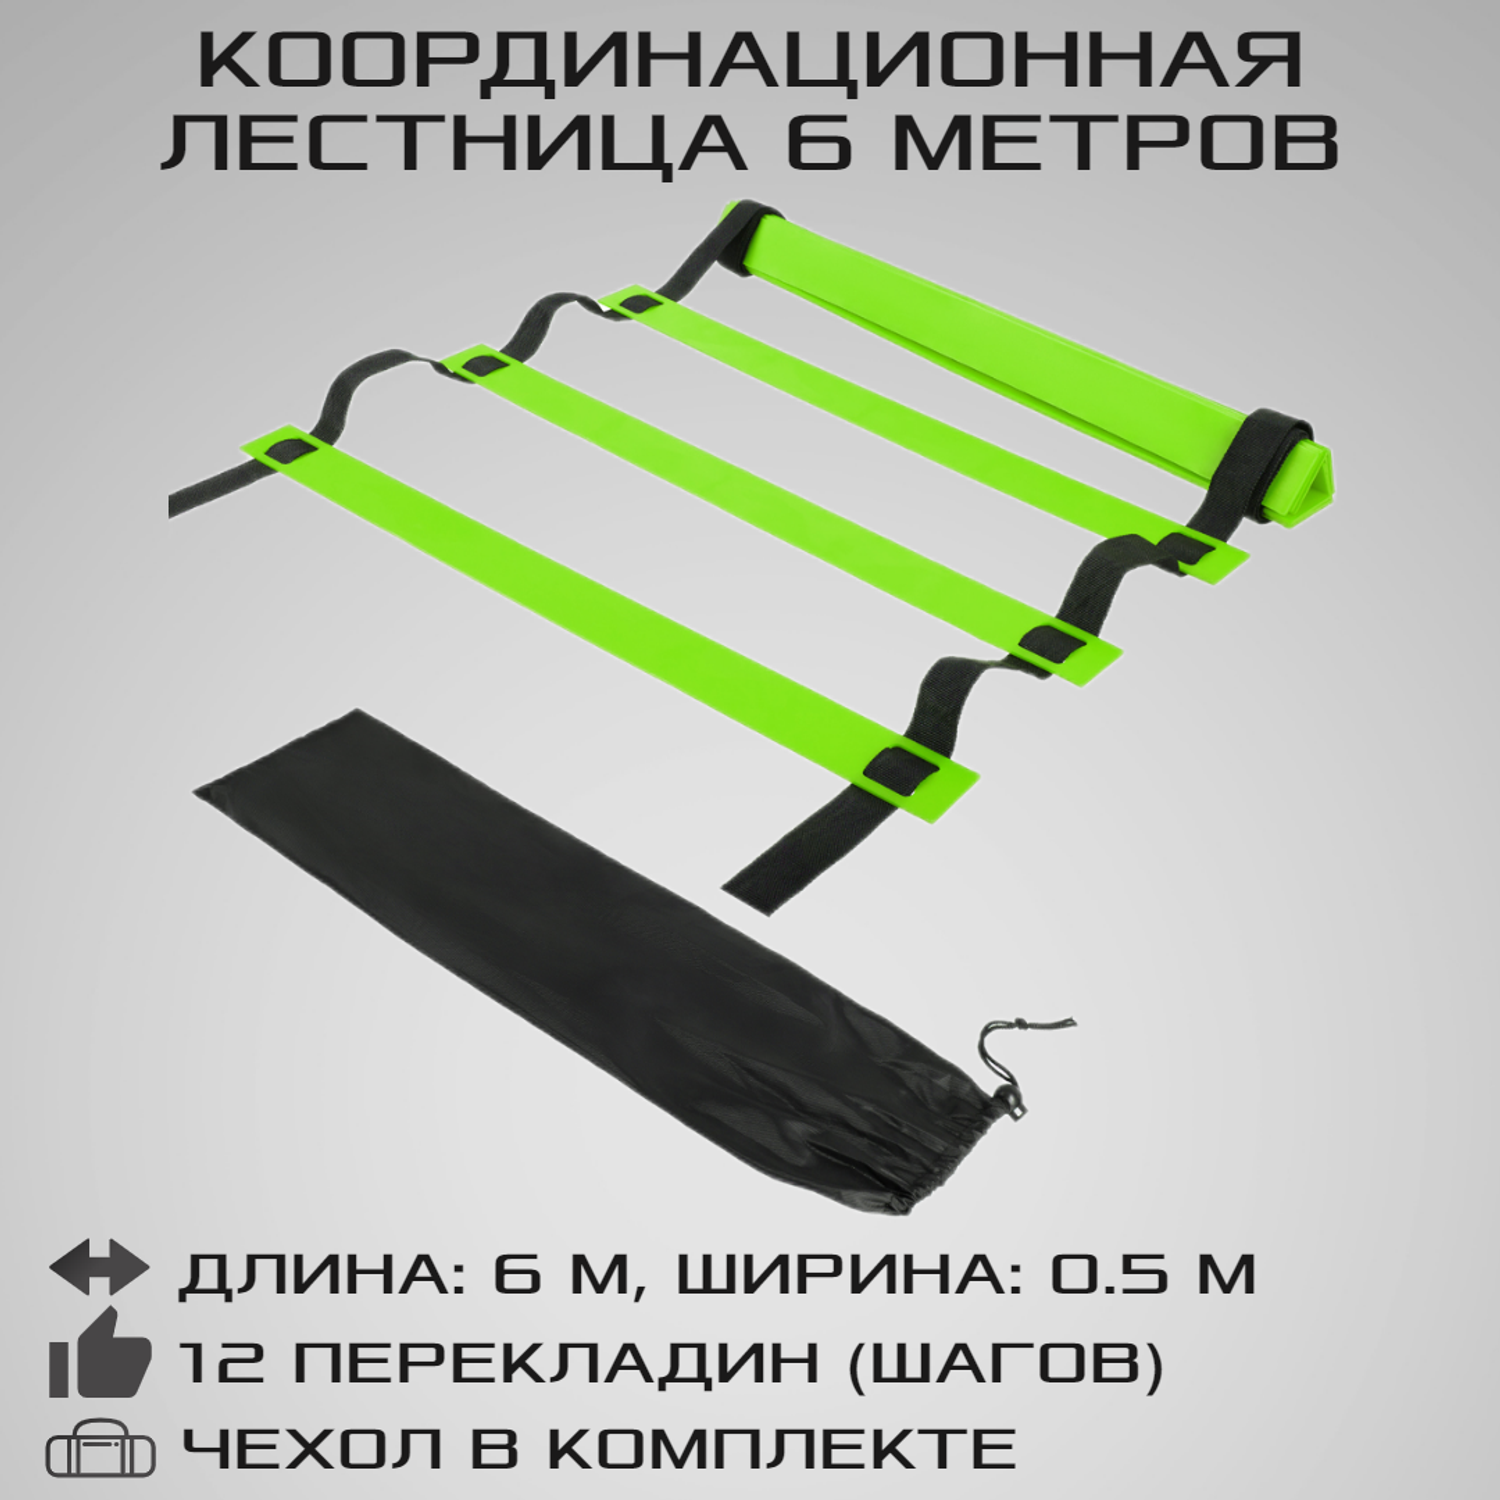 Координационная лестница STRONG BODY 6 метров 12 перекладин черно-зеленая - фото 1